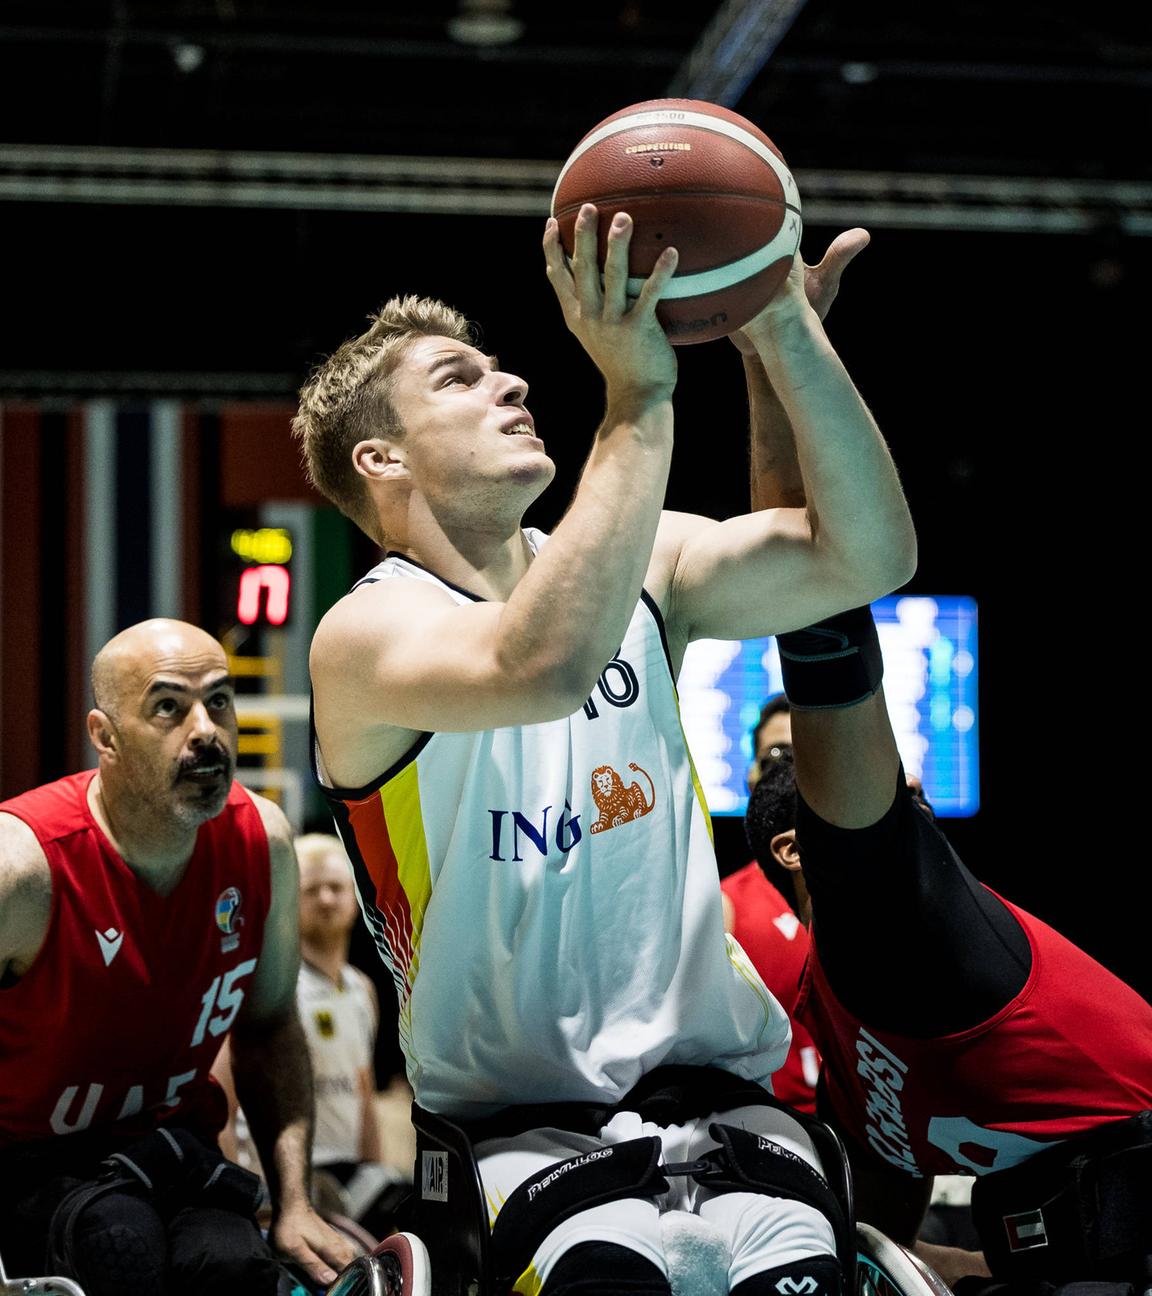 Julian Lammering im Deutschlandtrikot wirft einen Basketball.